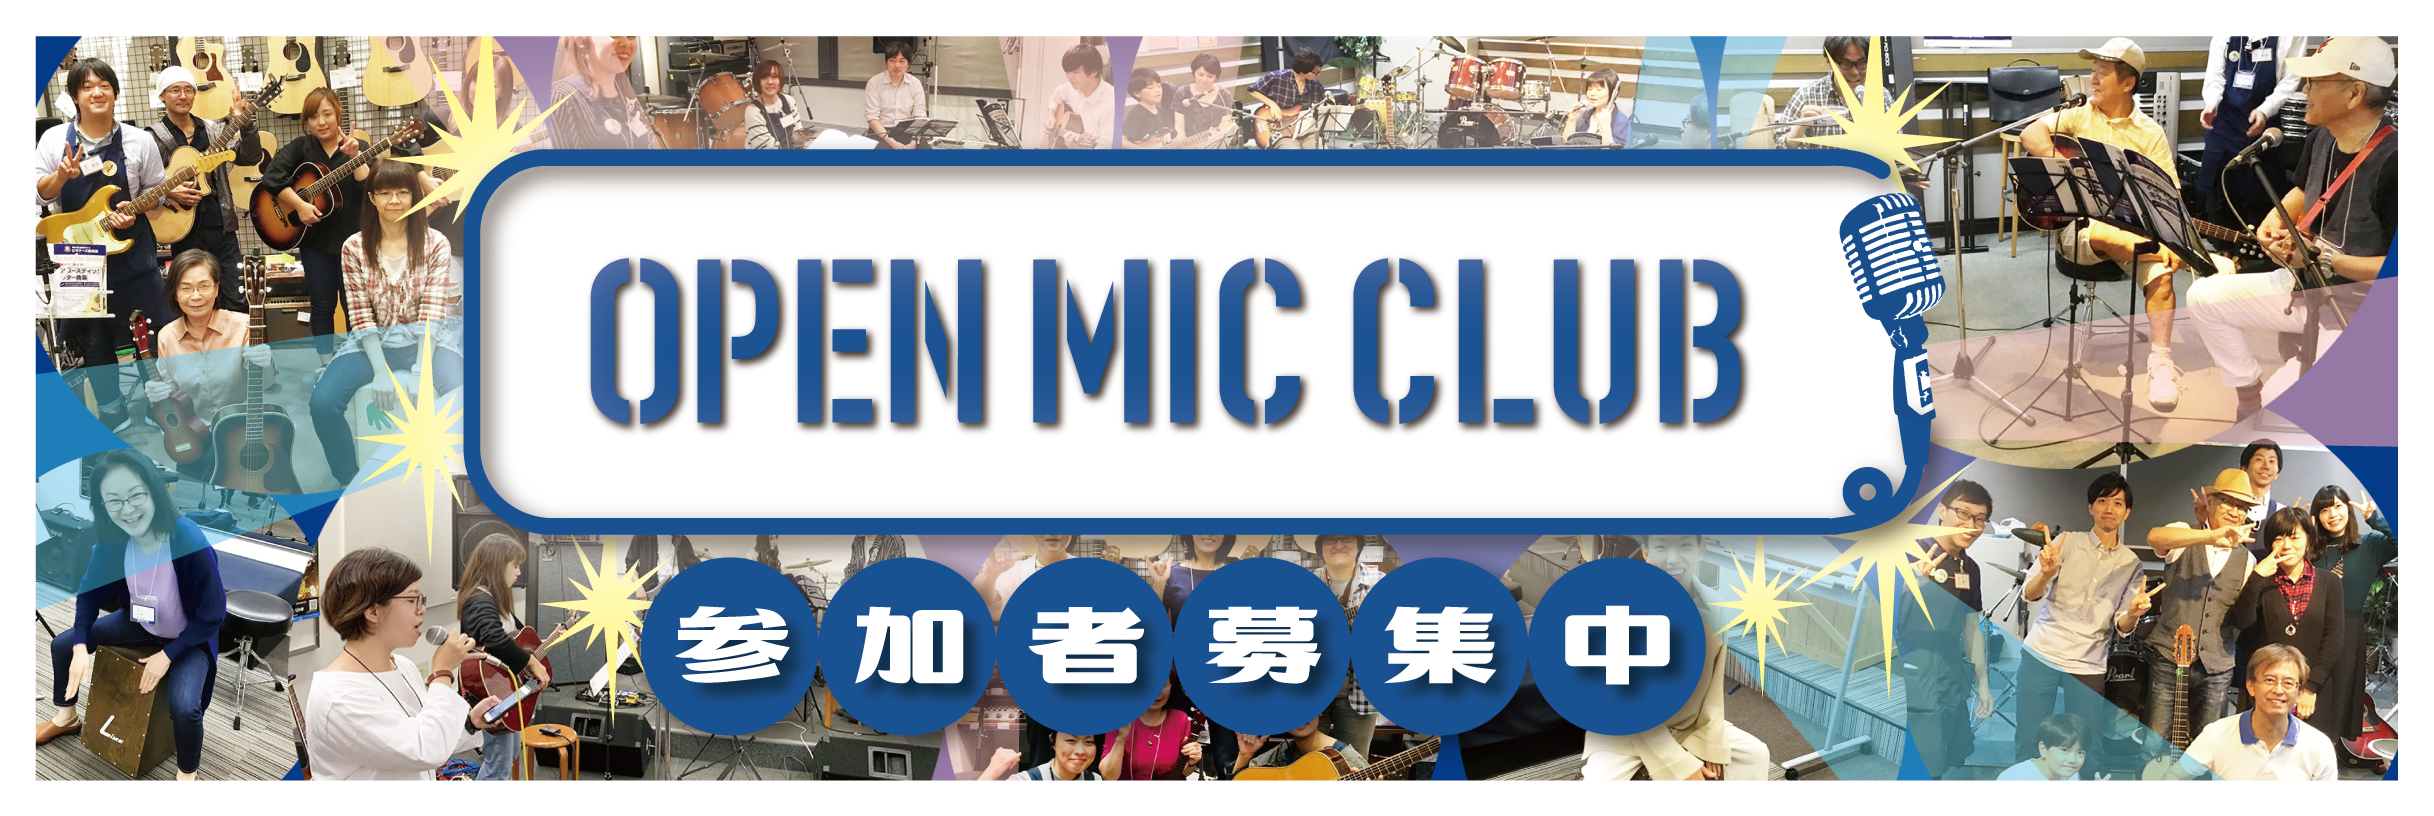 OPEN MIC CLUBサークル担当の小池です！]]10月10日（日）に開催された「OPEN MIC CLUB」のサークル活動をレポートします！ *河原町店「OPEN MIC CLUB」は私が担当しています！ |*名前|小池| これからオープンマイククラブを担当します小池です！]]「OPEN MI […]